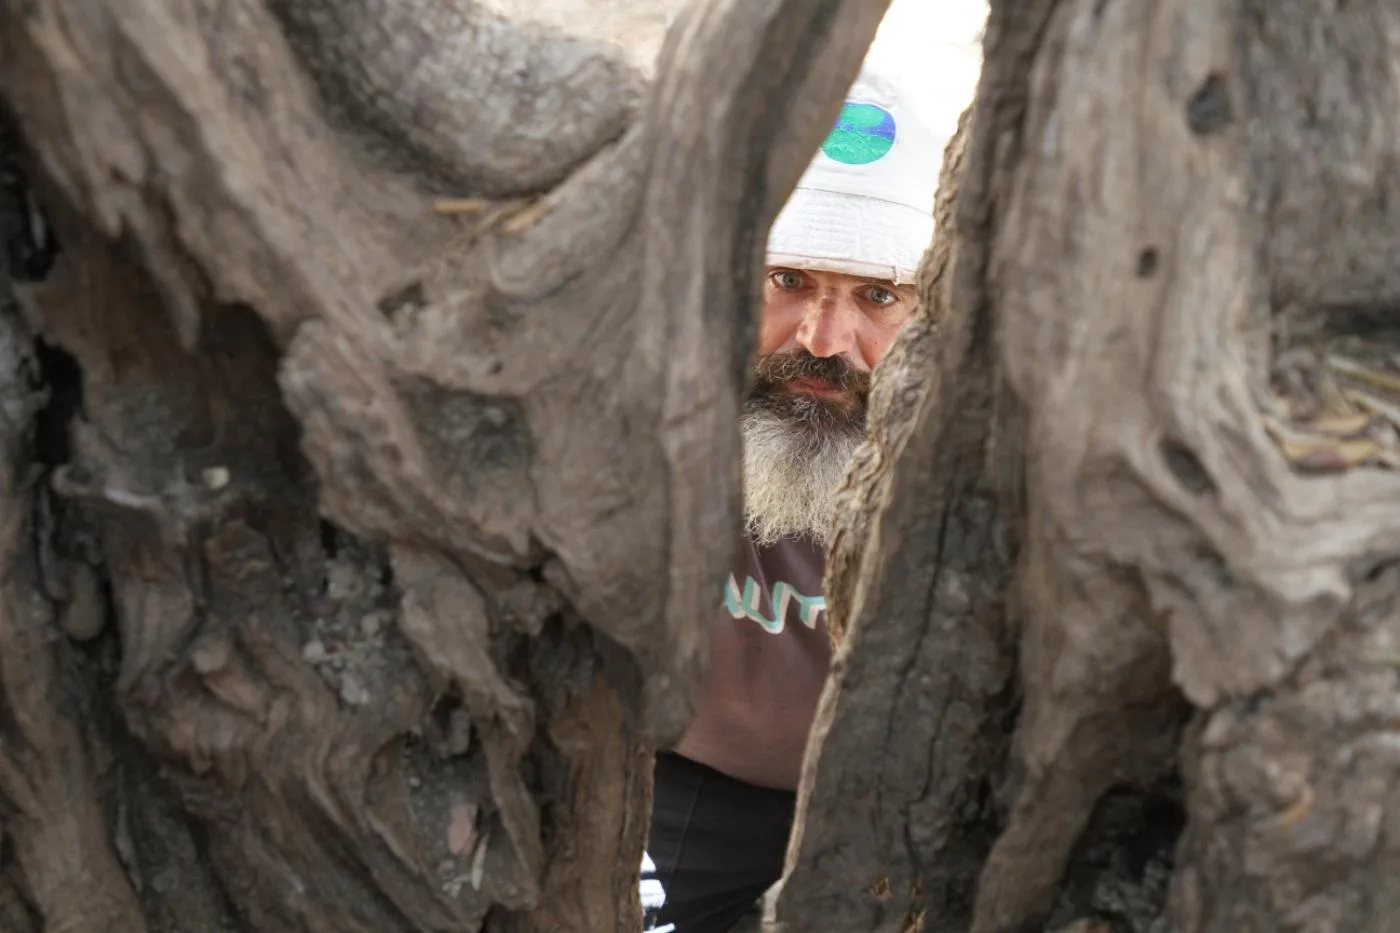 تعود ملكية الشجرة القديمة لعائلة صلاح أبو علي، وهي تقع في قرية الولجة في بيت لحم، جنوب غرب القدس المحتلة.